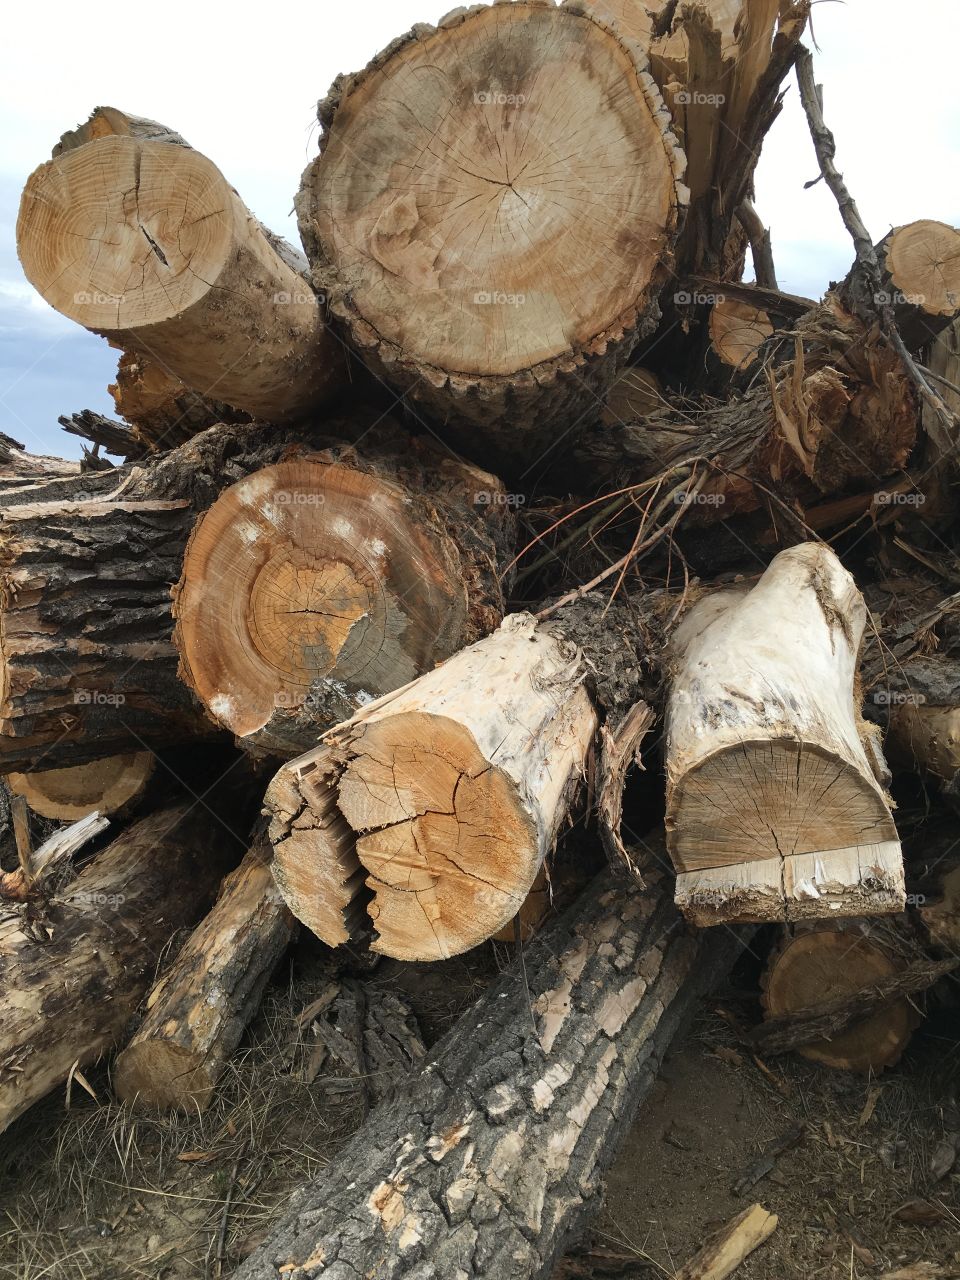 Logging.